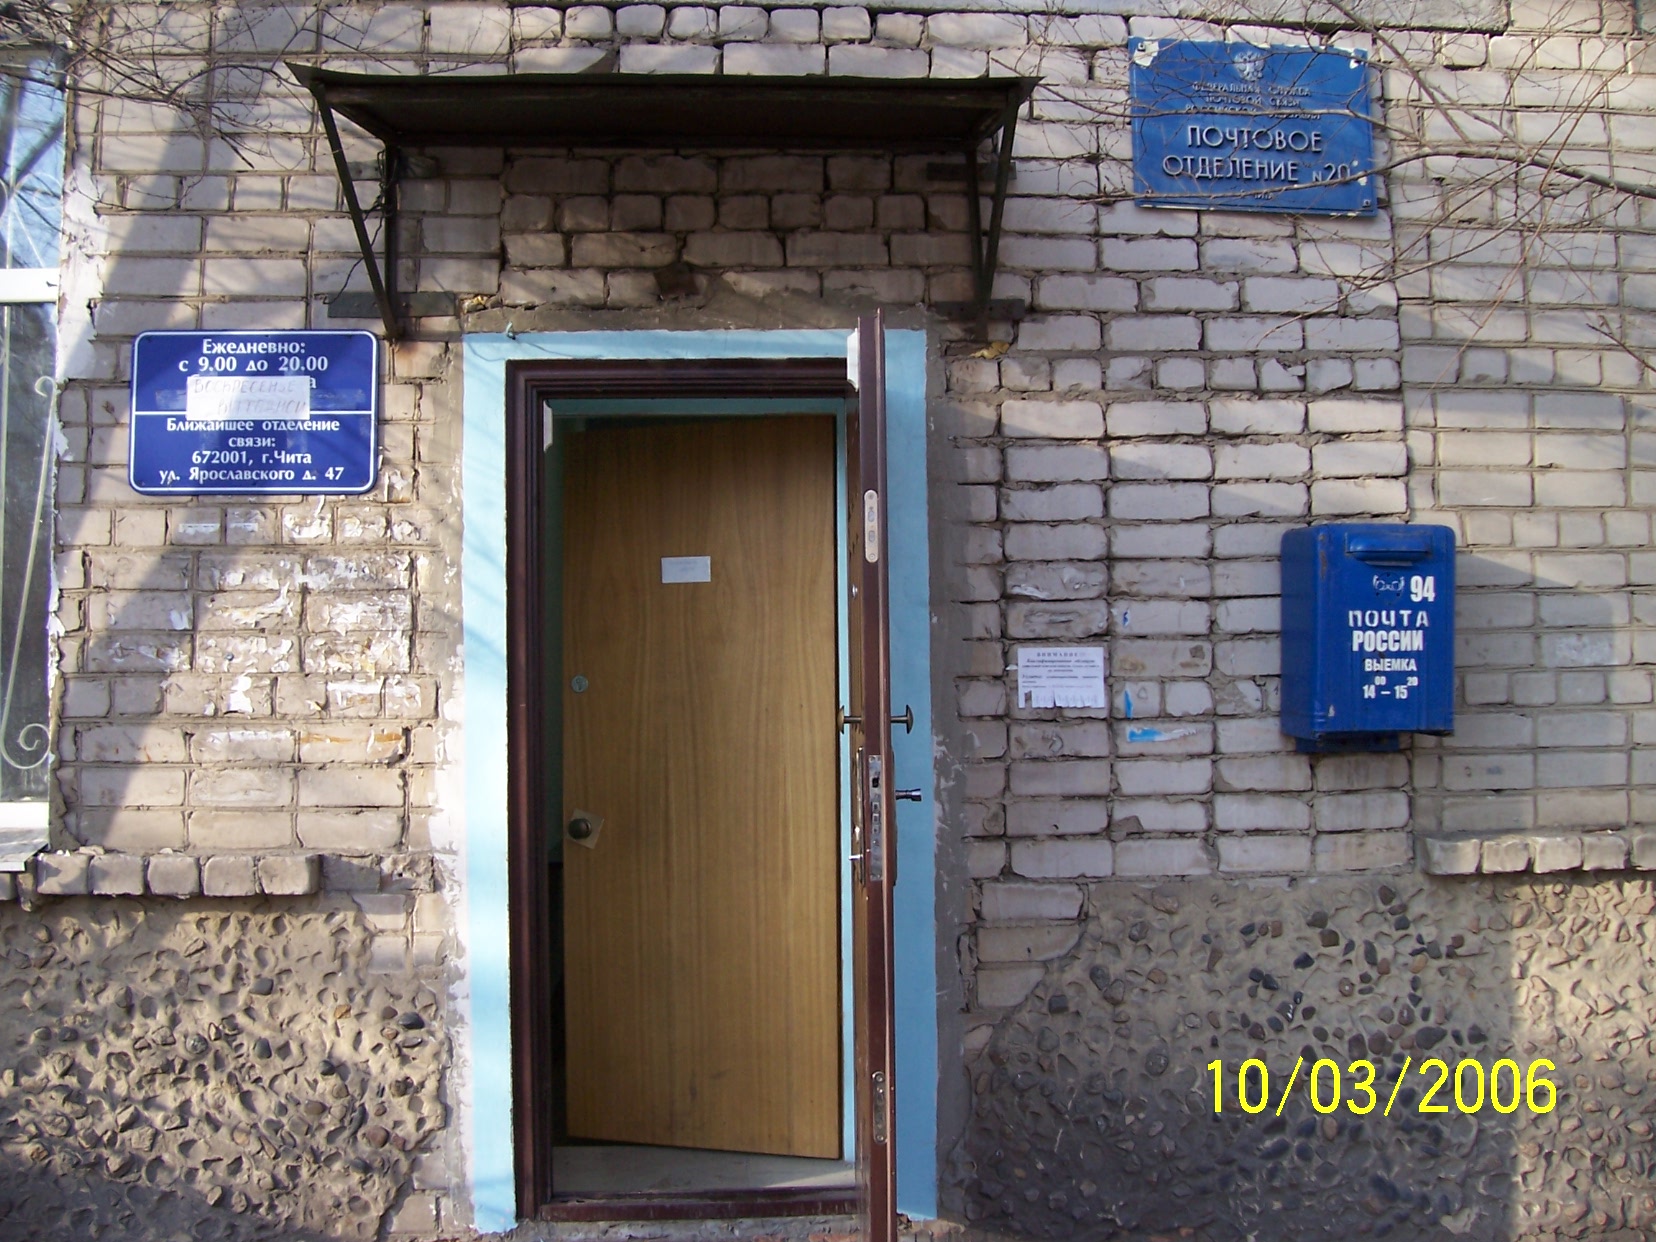 ВХОД, отделение почтовой связи 672020, Забайкальский край, Чита